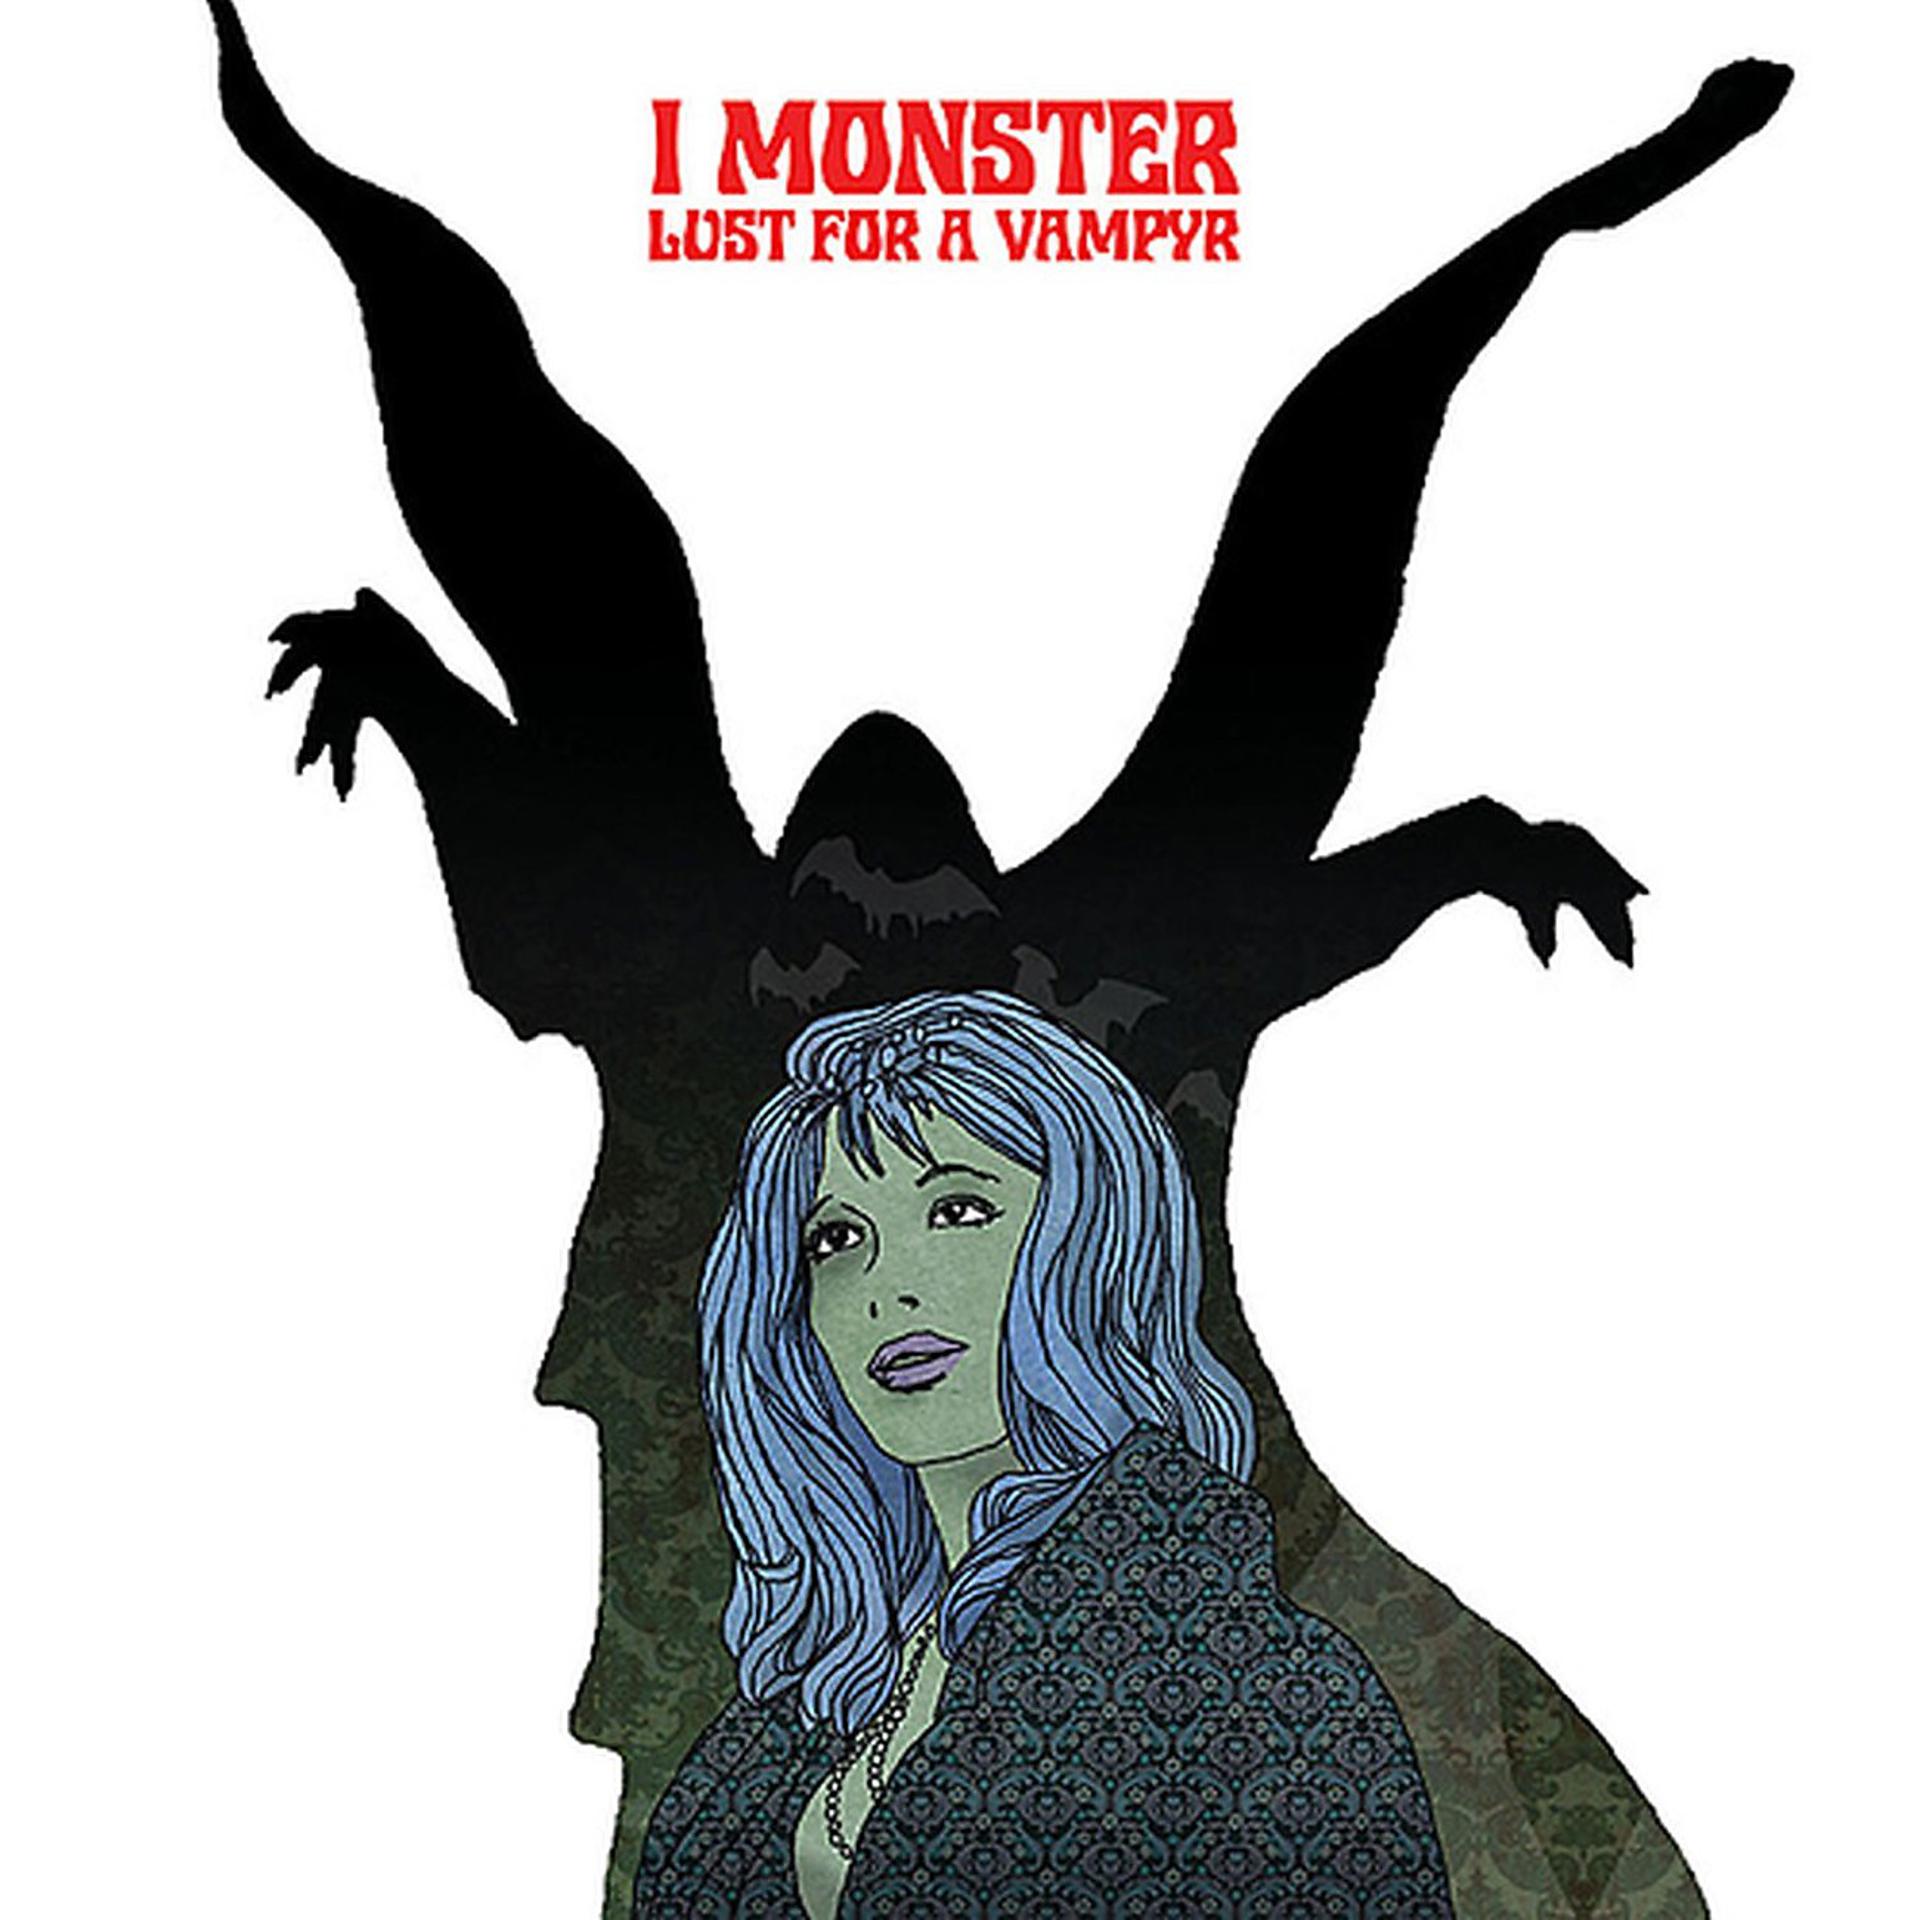 I Monster группа. I Monster альбом. Группа i Monster альбомы. I Monster neveroddoreven. Чудища песни